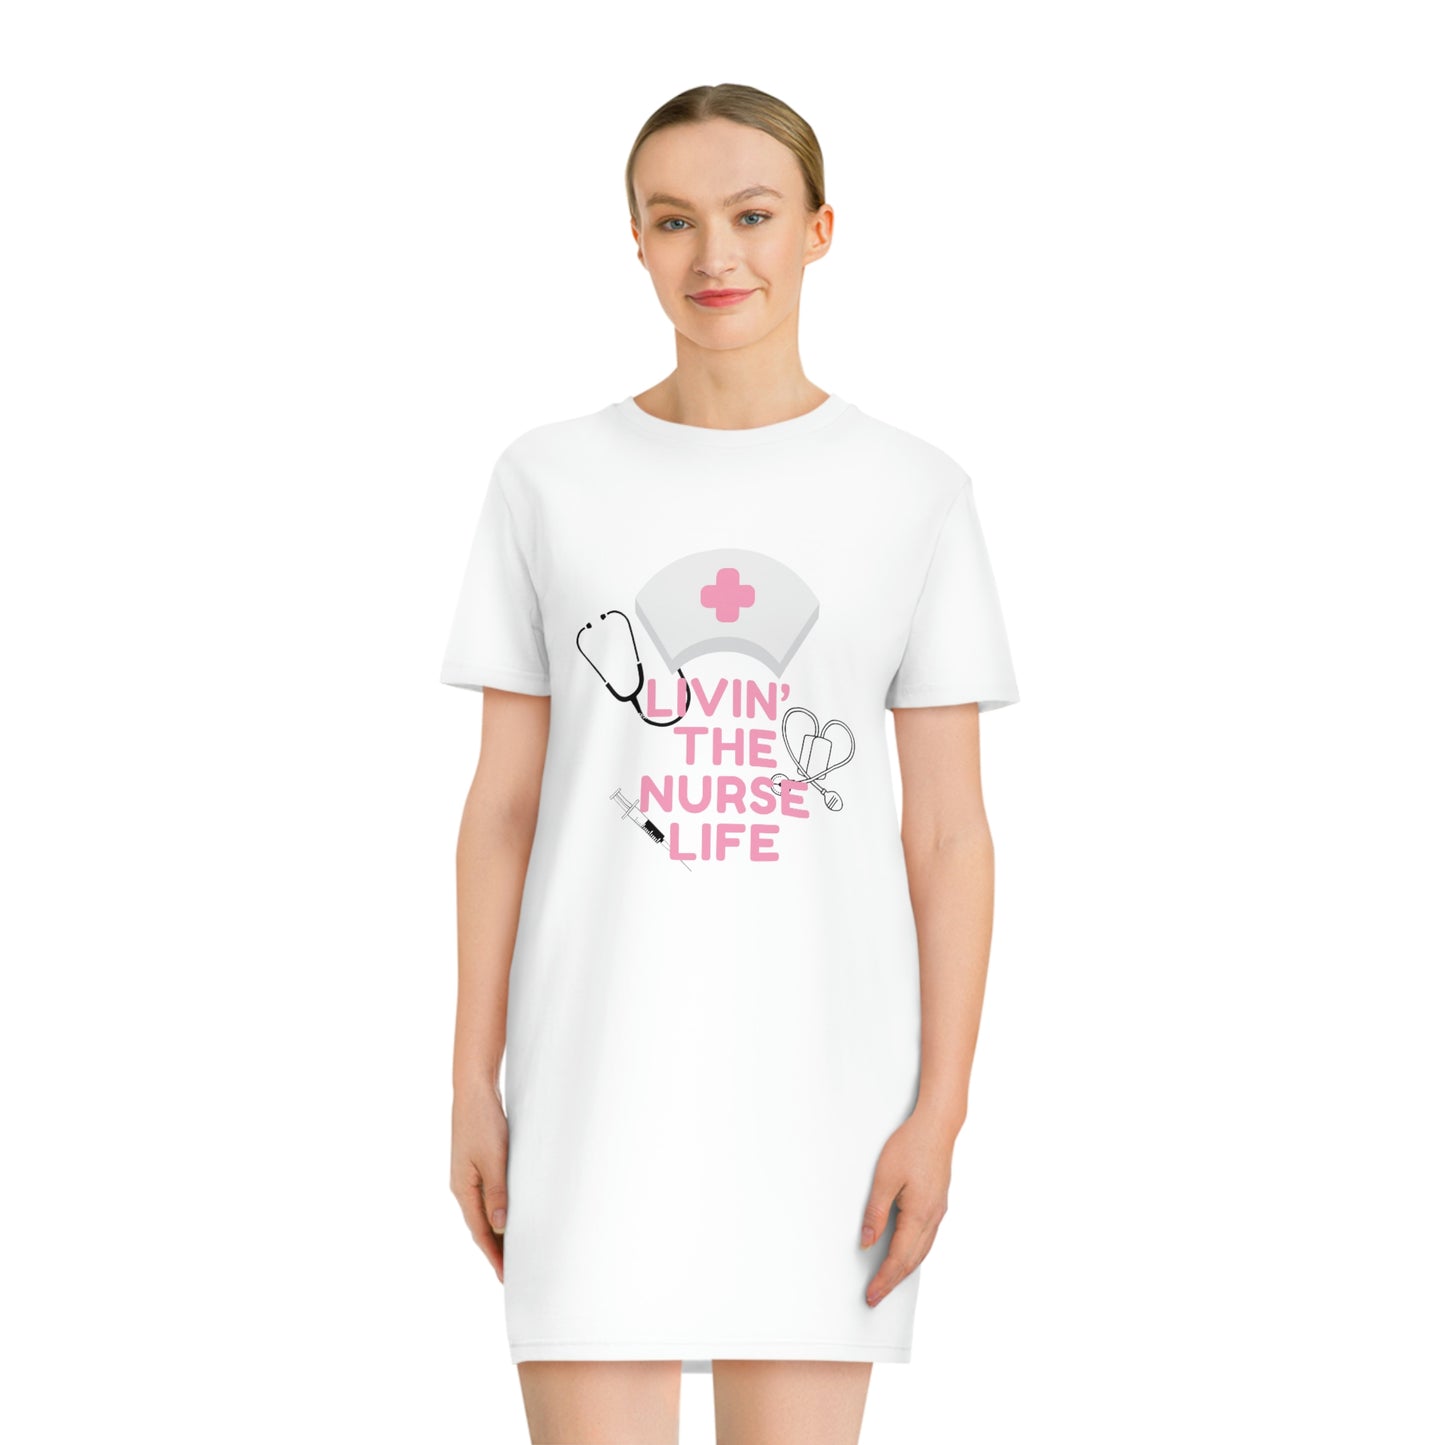 'Livin' The Nurse Life' impreso en ambos lados. Vestido camiseta con estampado orgánico